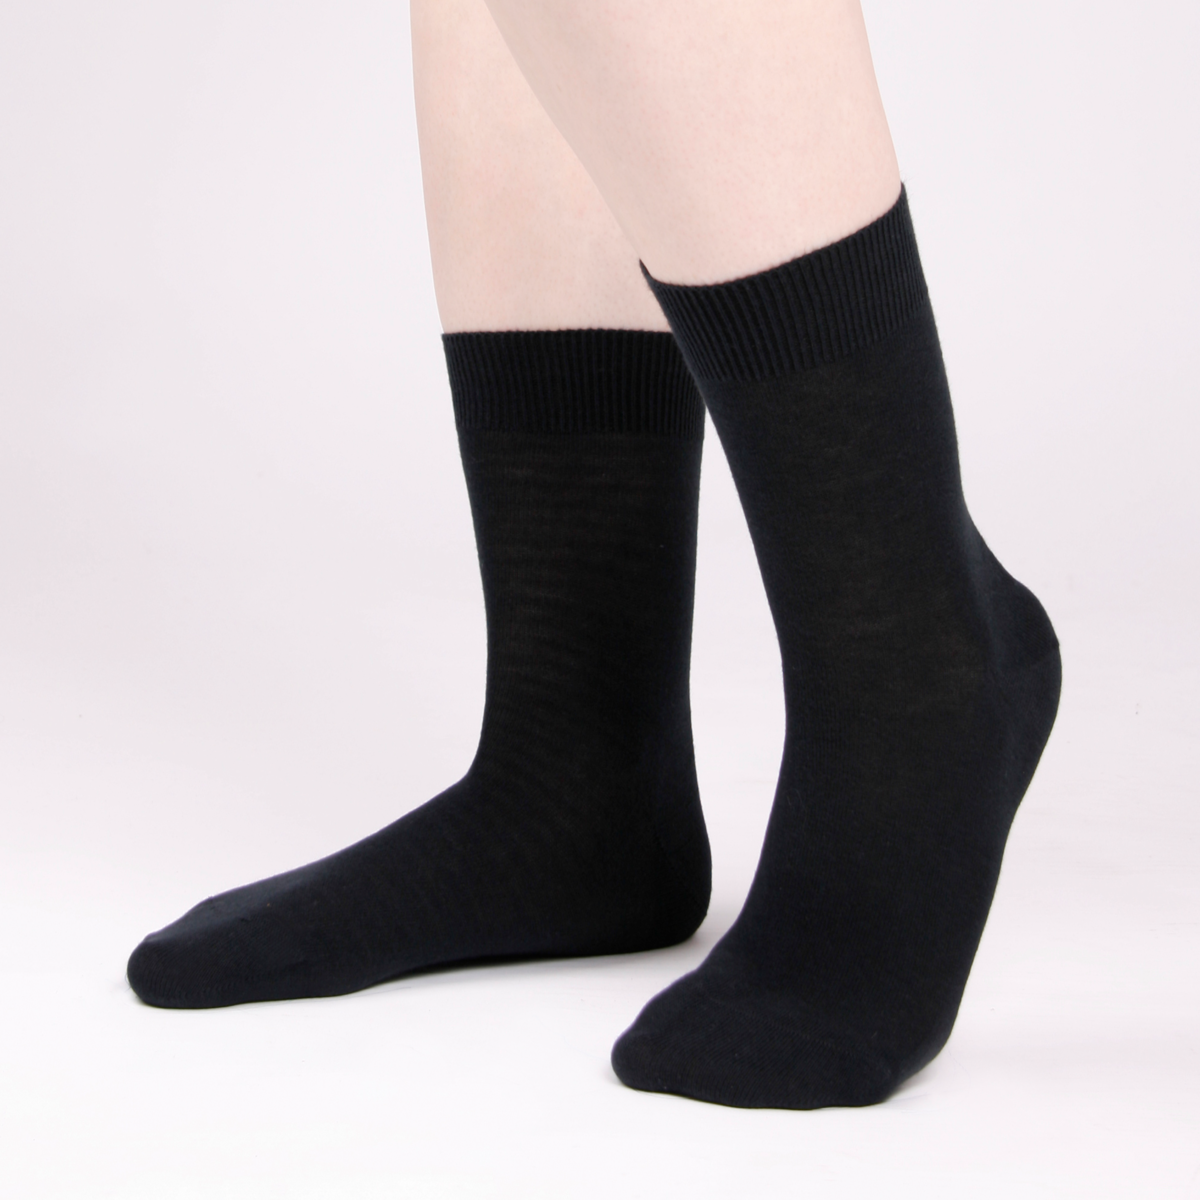 Black Unisex Socks, pack of 2